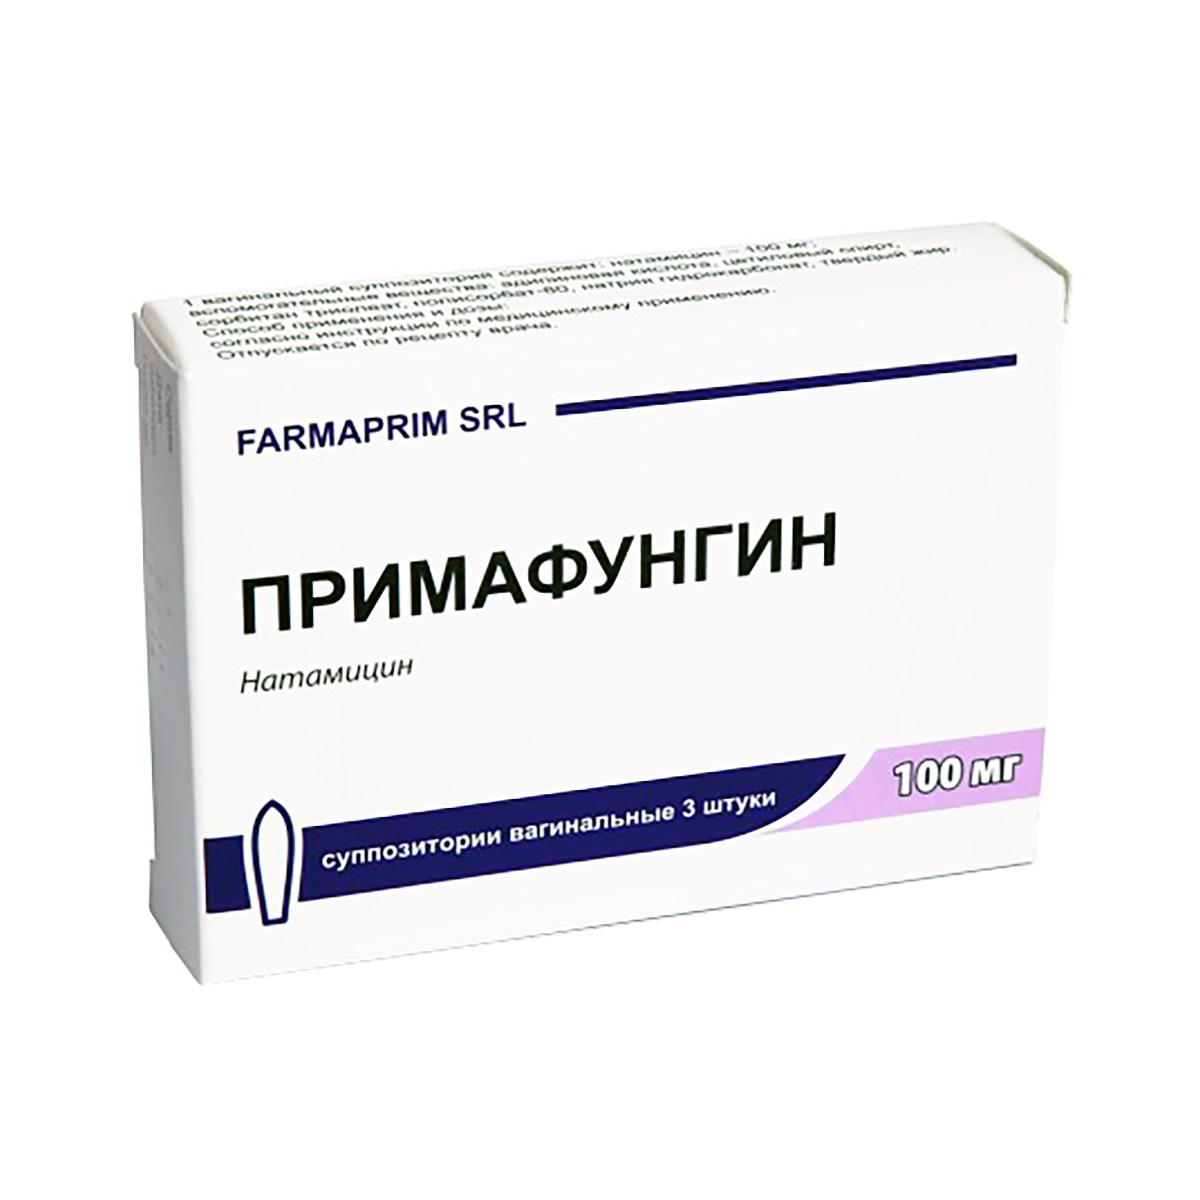 Примафунгин 100 мг суппозитории вагинальные 3 шт